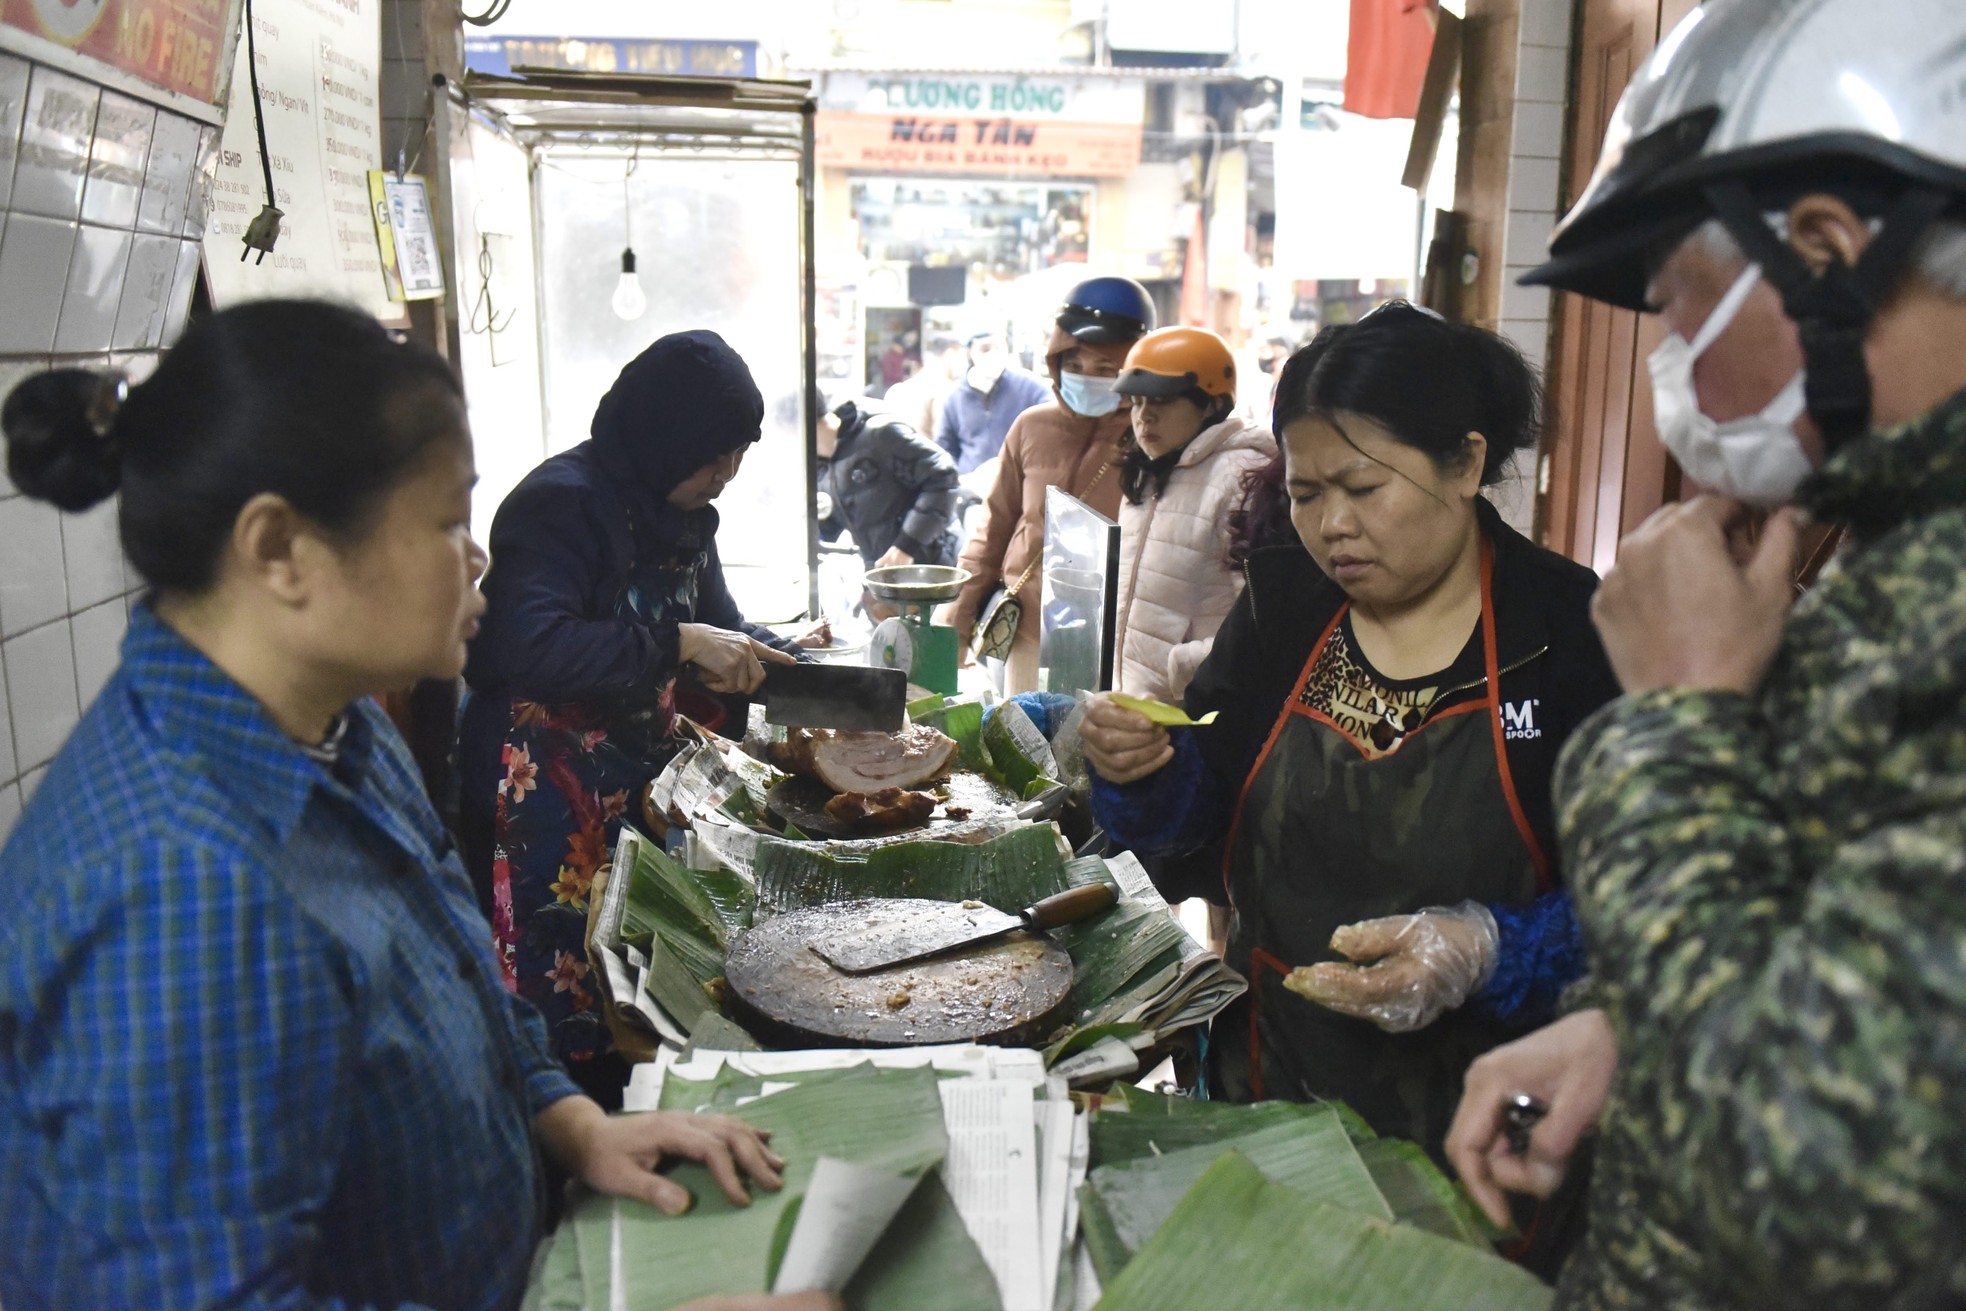 Xếp hàng dài giữa trưa mua heo quay ngày vía Thần Tài tại Hà Nội - Ảnh 8.